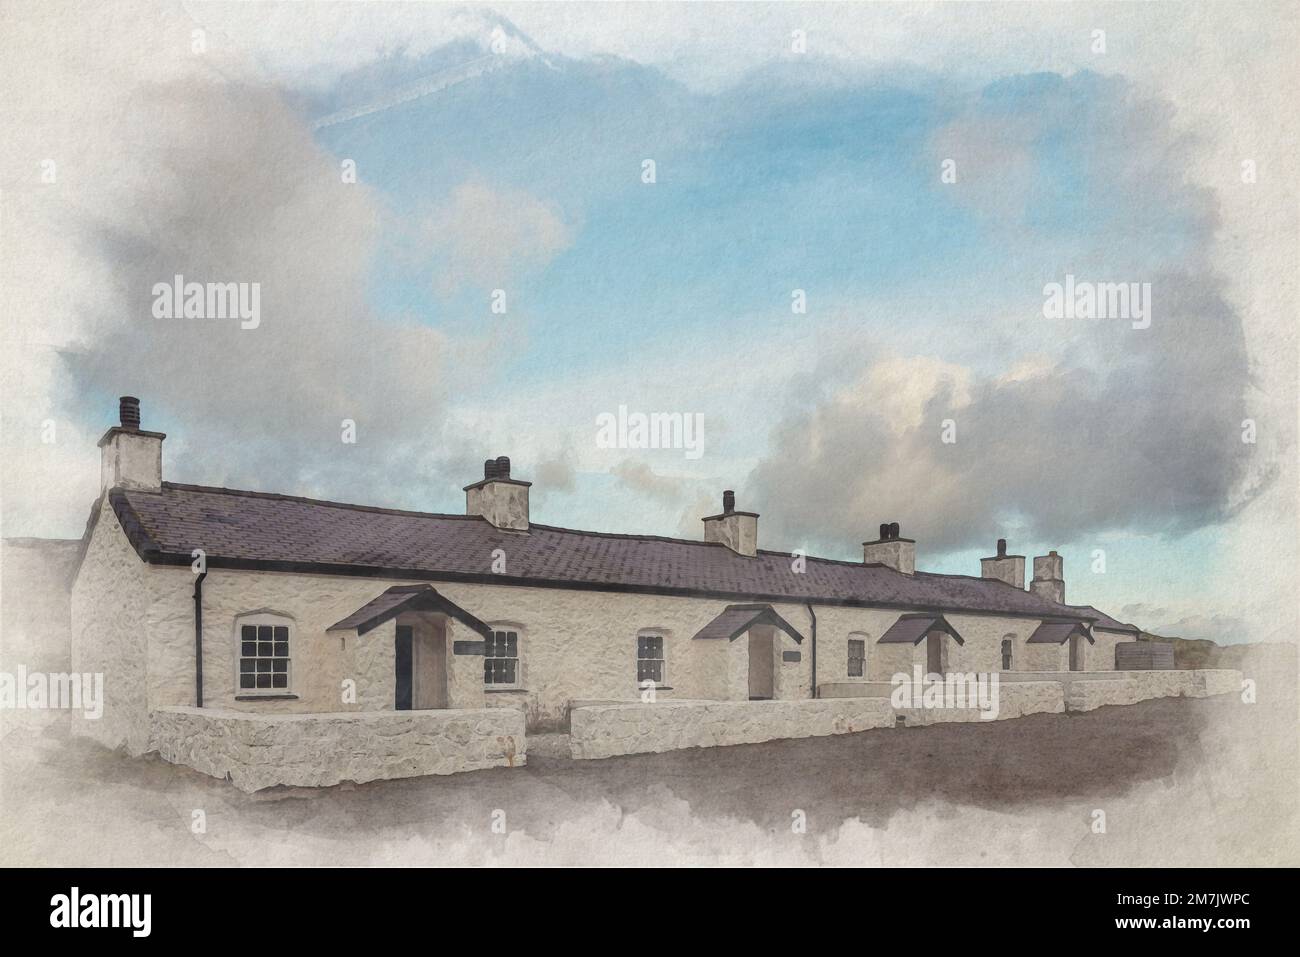 Peinture numérique aquarelle des cottages du pilote et traversée à Ynys Llanddwyn sur Anglesey, au pays de Galles, au Royaume-Uni Banque D'Images